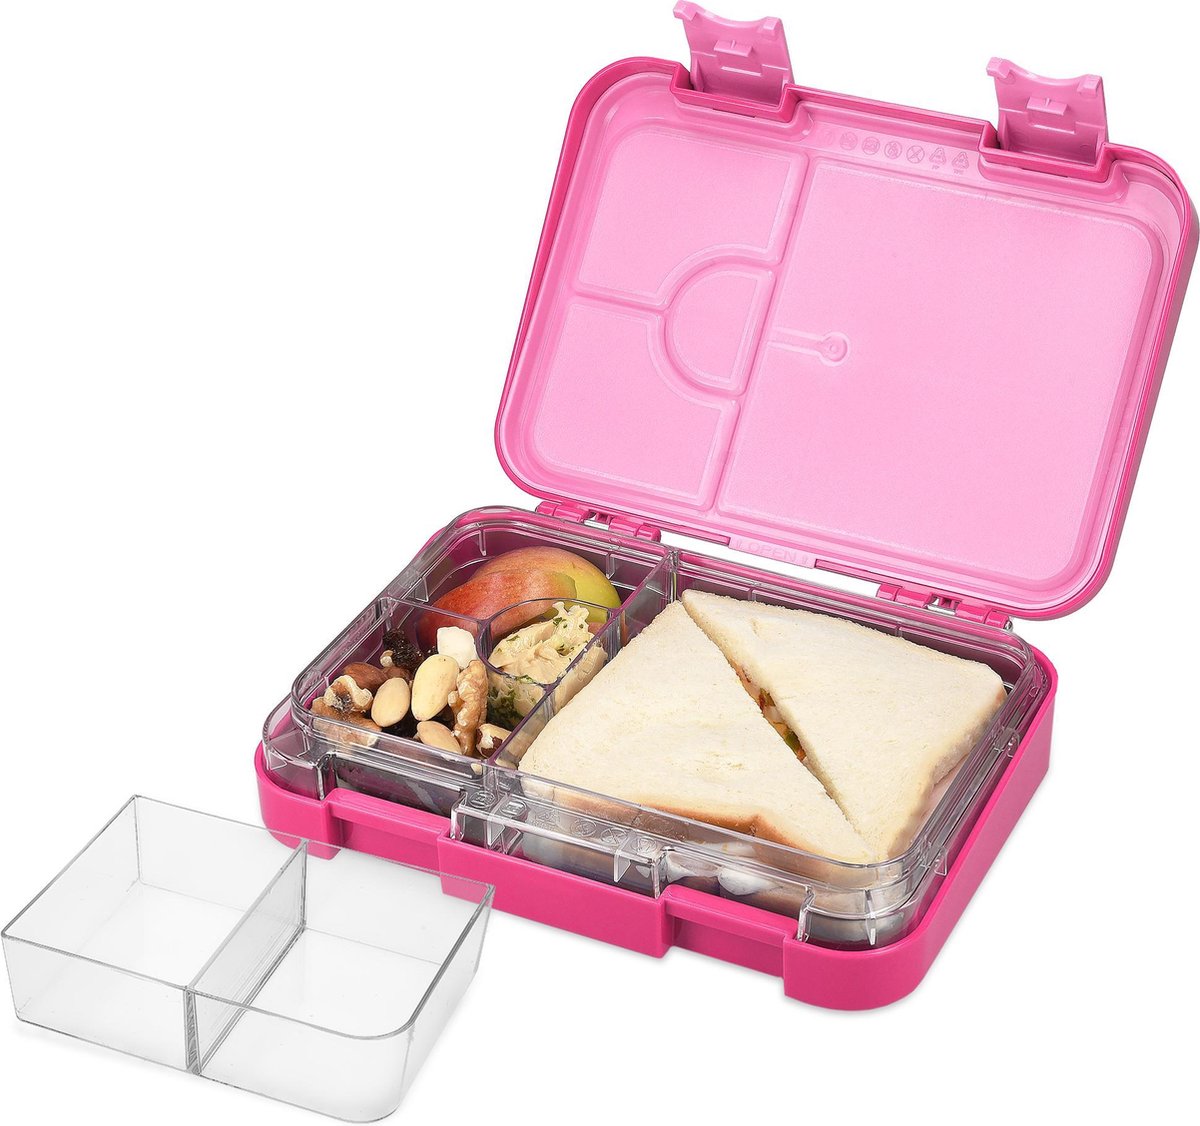 Navaris bentobox - Lunchbox met 4 tot 6 compartimenten - Broodtrommel met variabele vakjes - Voor lunch en tussendoortjes buitenhuis en op werk - Roze